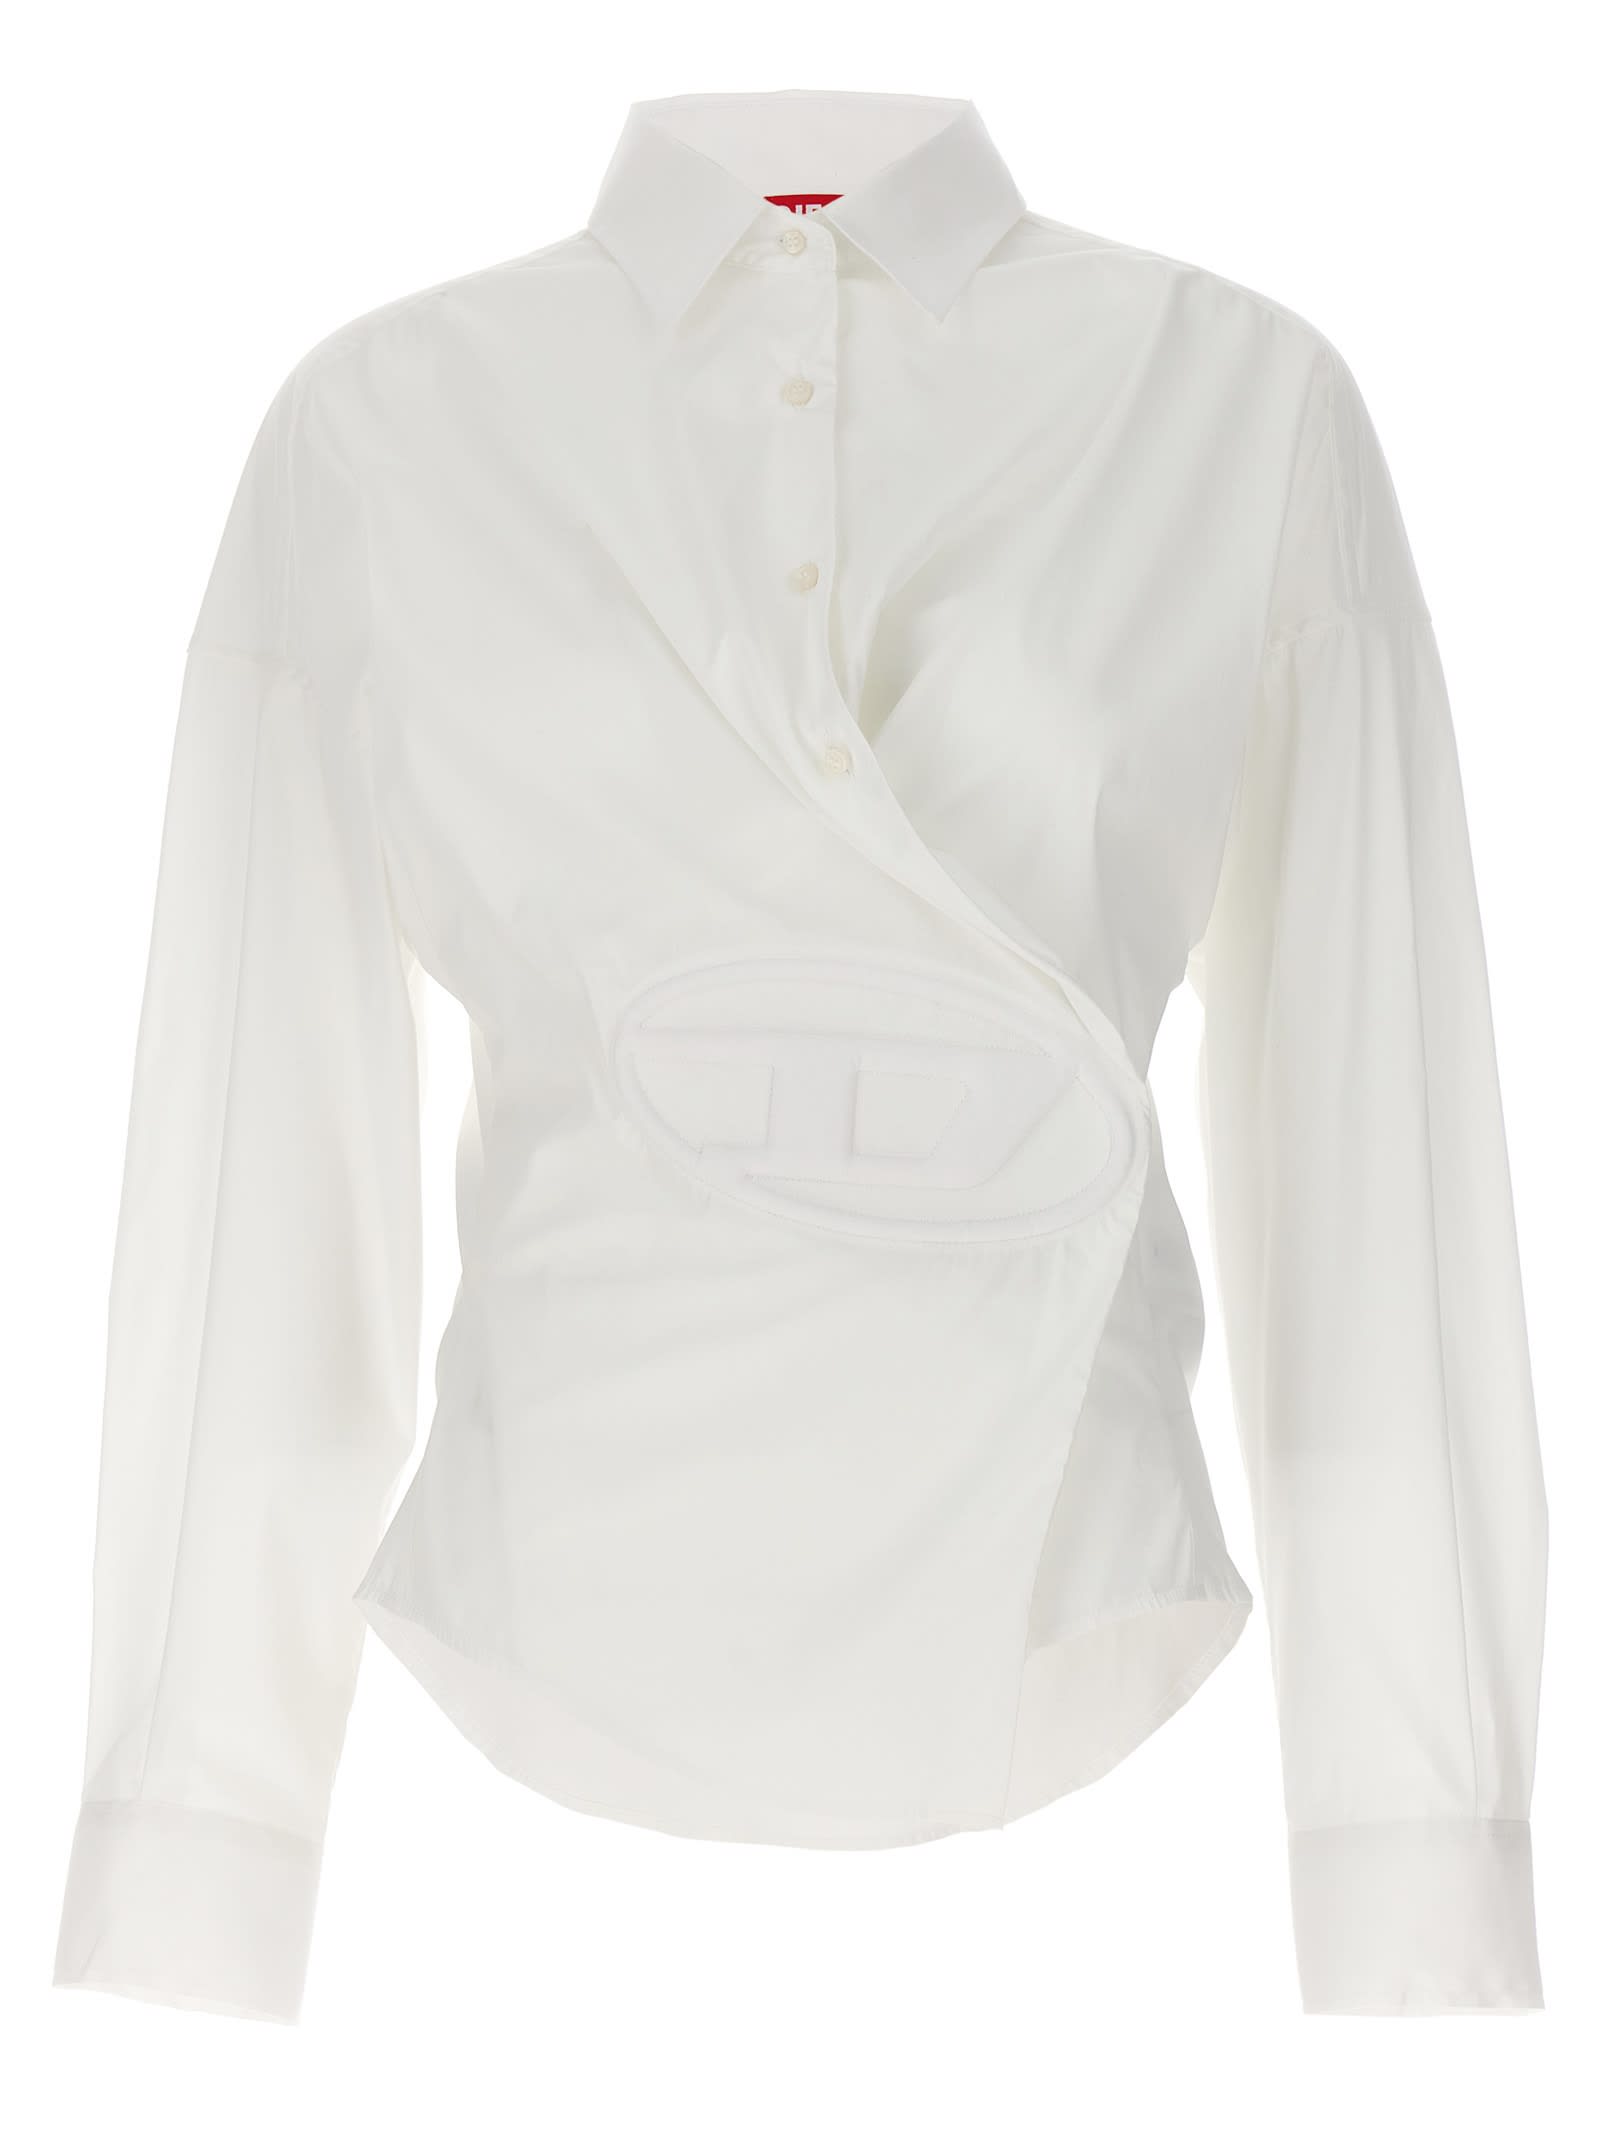 White C-siz-n1 Shirt